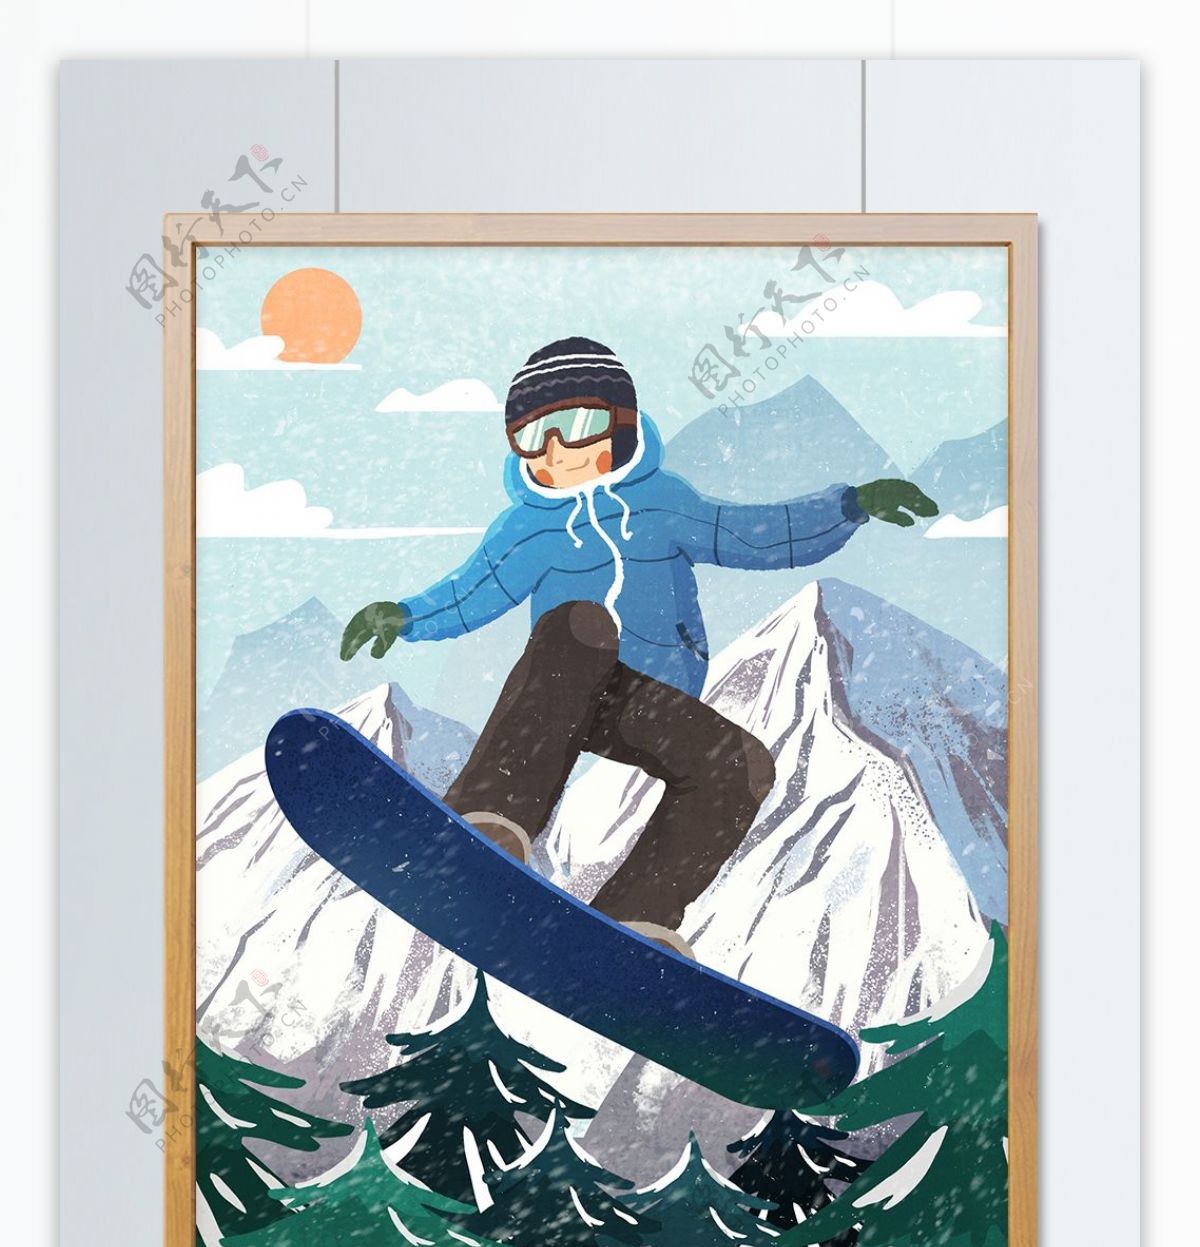 少年山中滑板滑雪肌理写实原创手绘插画